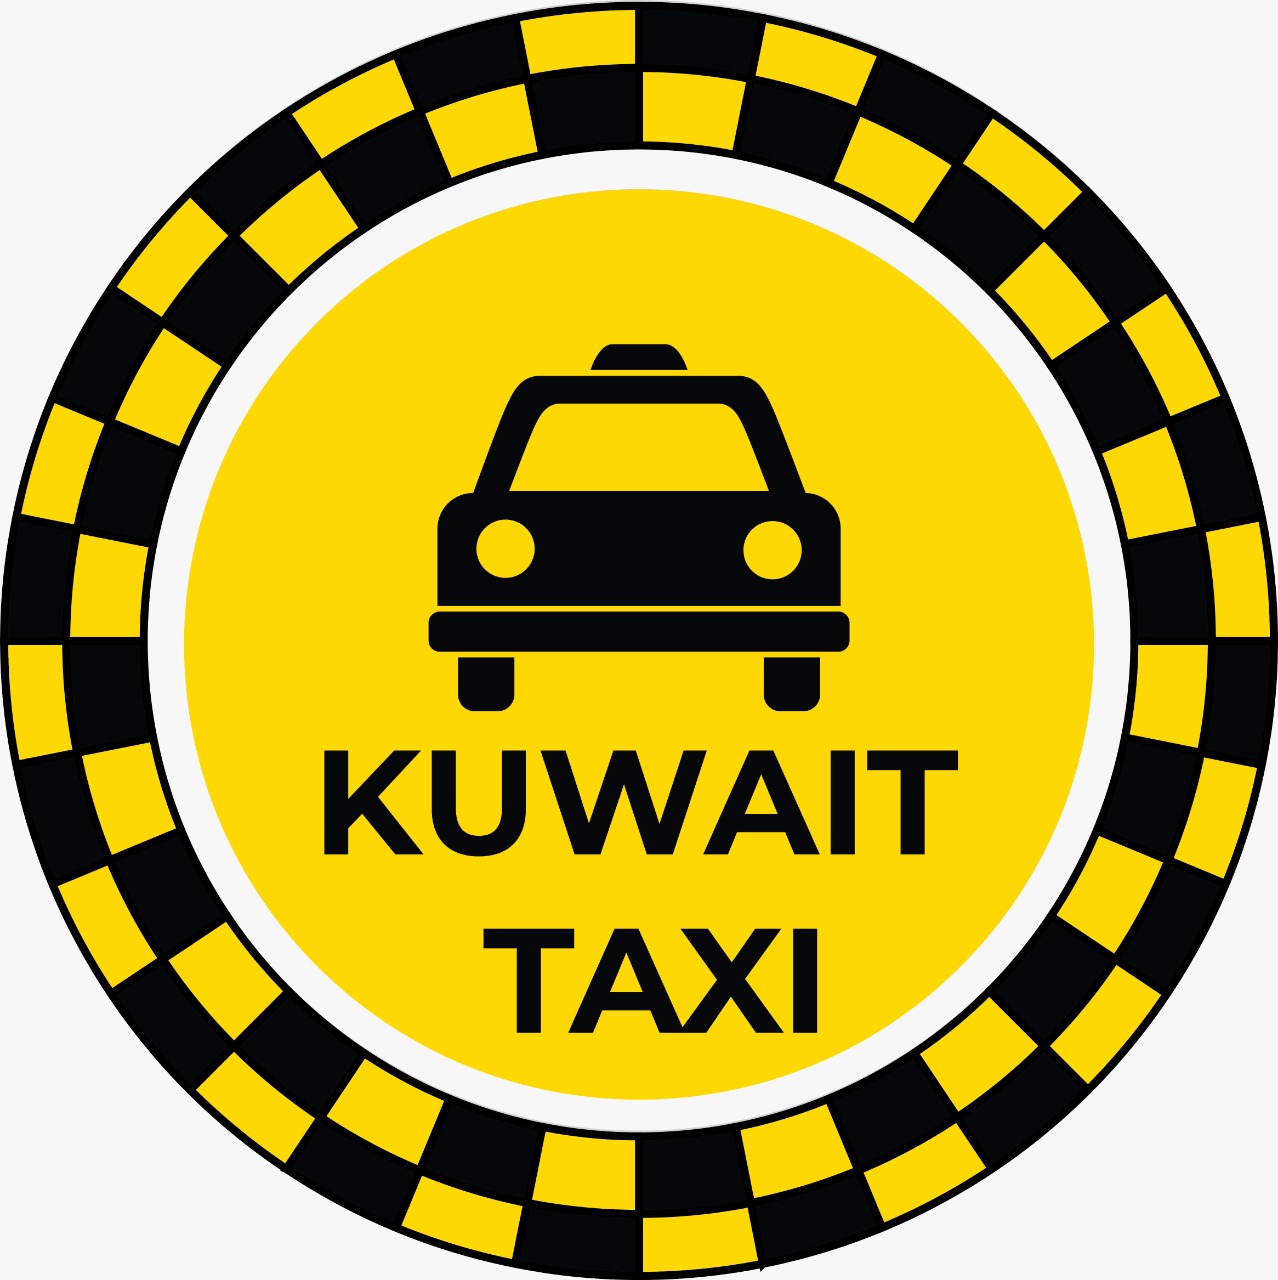 Taxi Number Al Qurain - Taxi in Al Qurain and Al-Qusour Kuwait